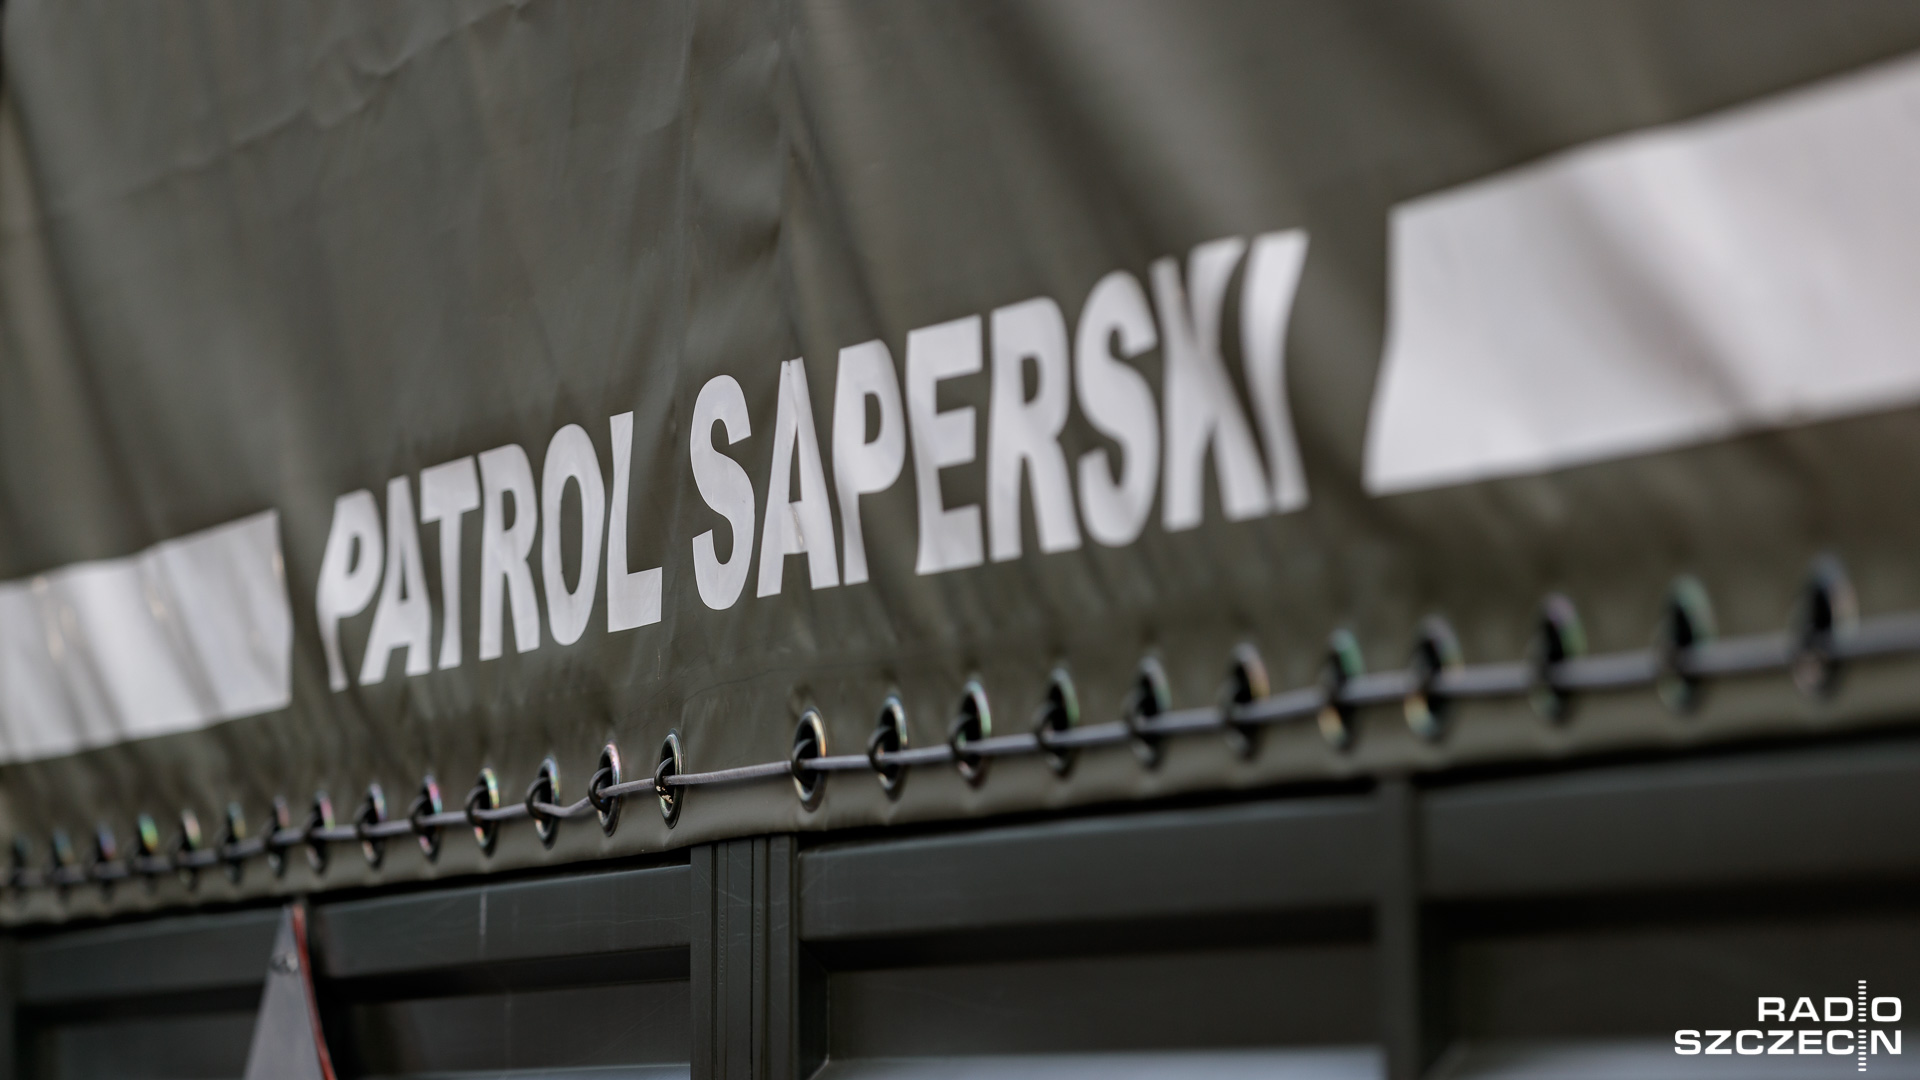 Najbliższe trzy miesiące spędzi w areszcie konstruktor bomby z Sulechowa w województwie lubuskim.